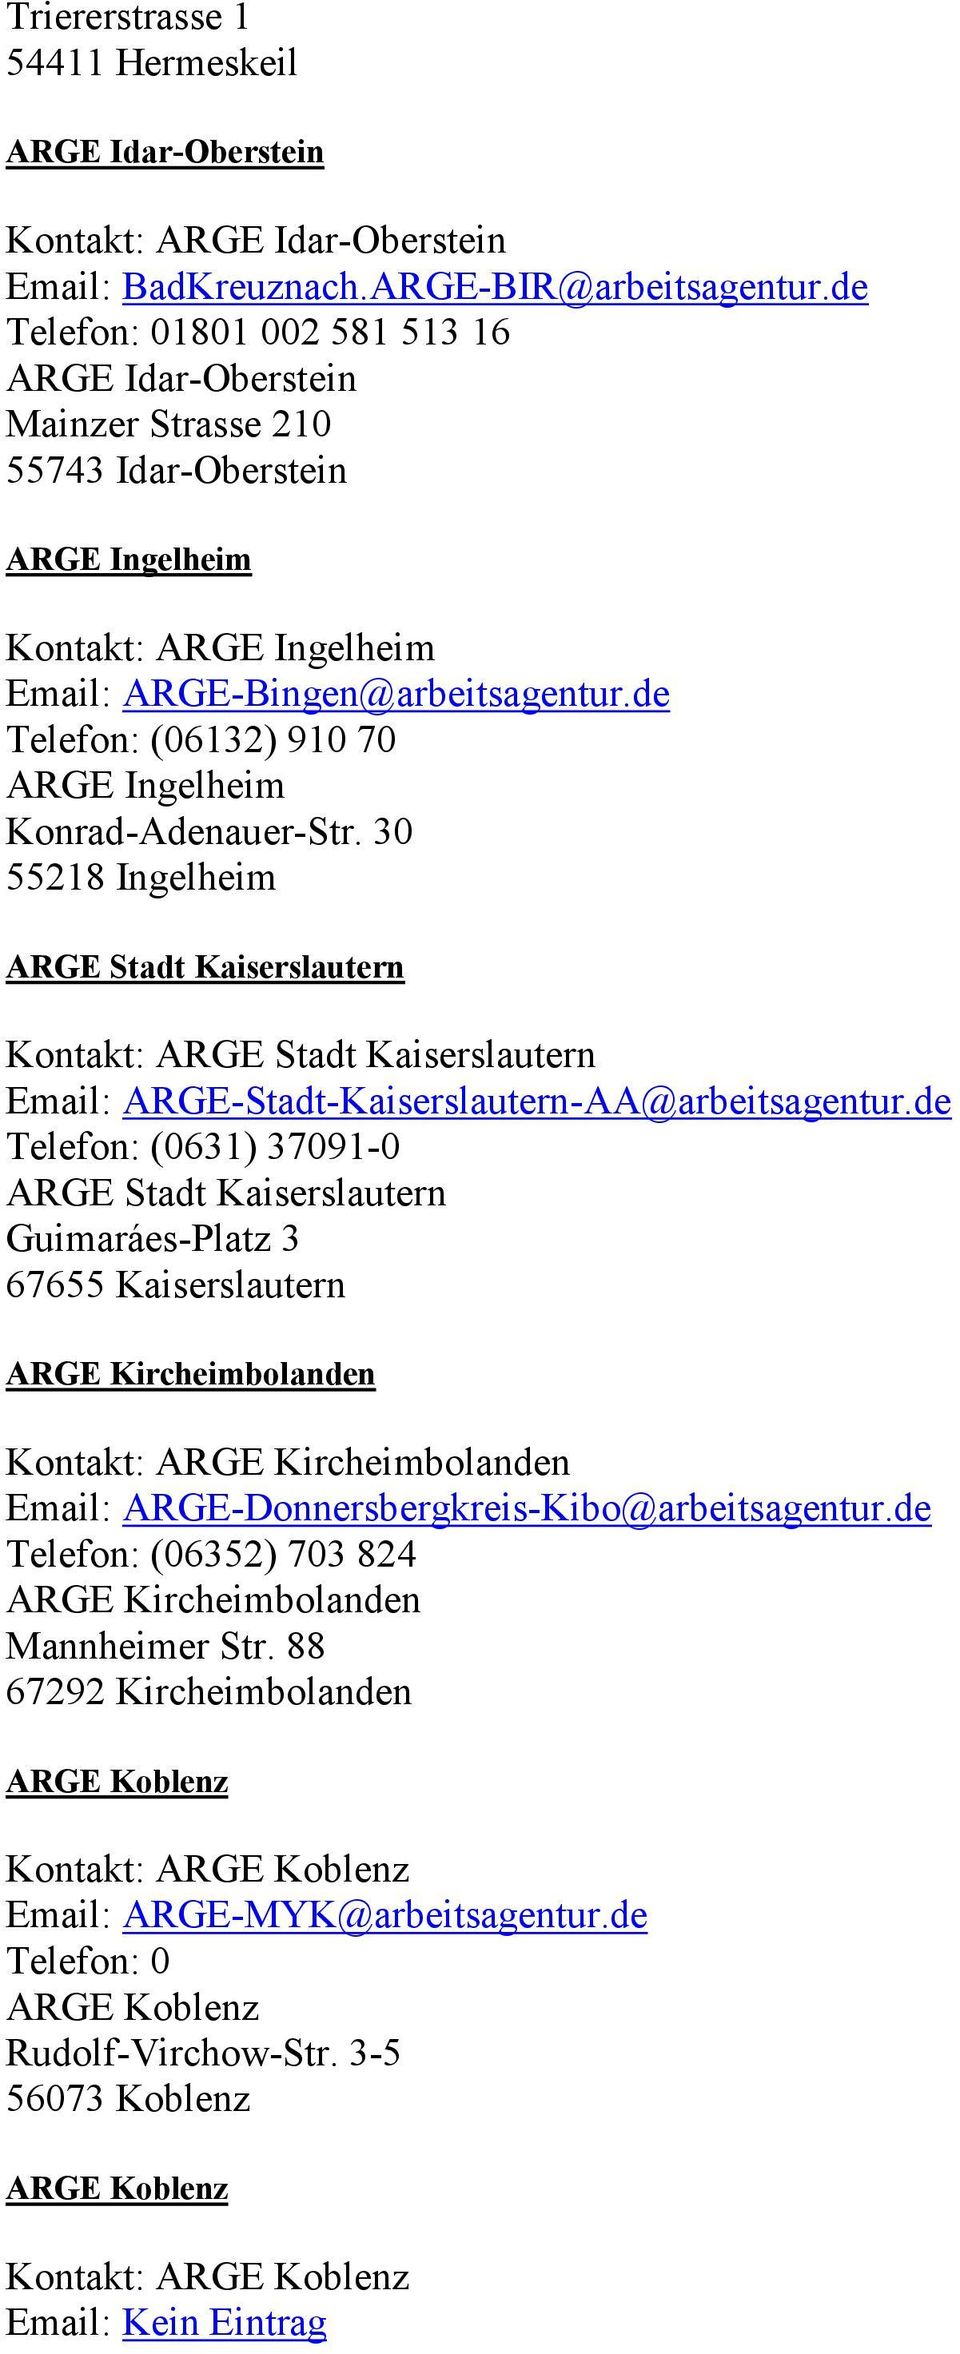 de Telefon: (06132) 910 70 ARGE Ingelheim Konrad-Adenauer-Str. 30 55218 Ingelheim ARGE Stadt Kaiserslautern Kontakt: ARGE Stadt Kaiserslautern Email: ARGE-Stadt-Kaiserslautern-AA@arbeitsagentur.